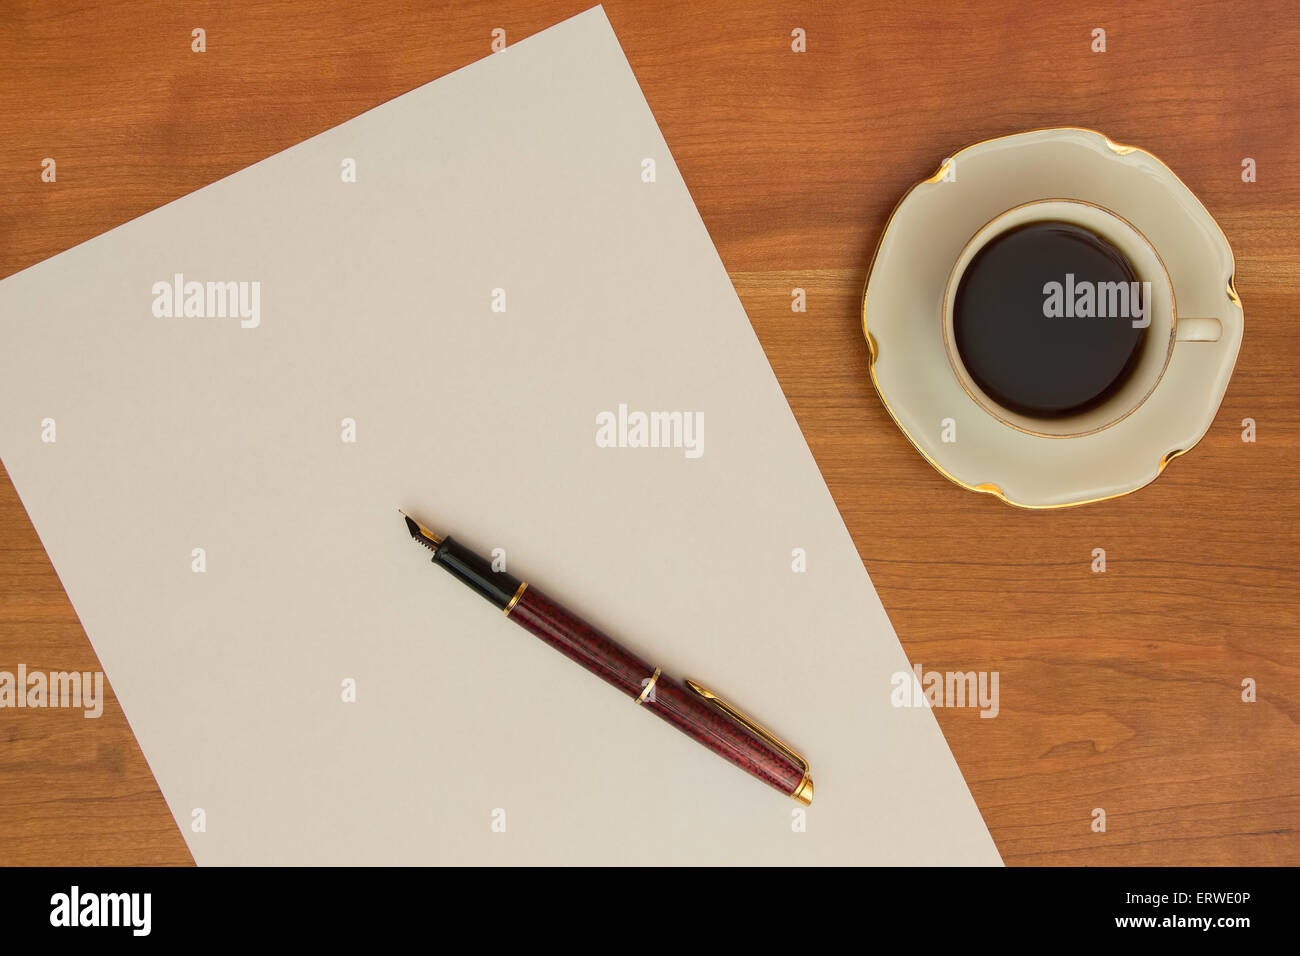 Acerca de escribir una carta. Lápiz, papel de oficina en blanco y negro de una taza de café en el mostrador de madera. Foto de stock